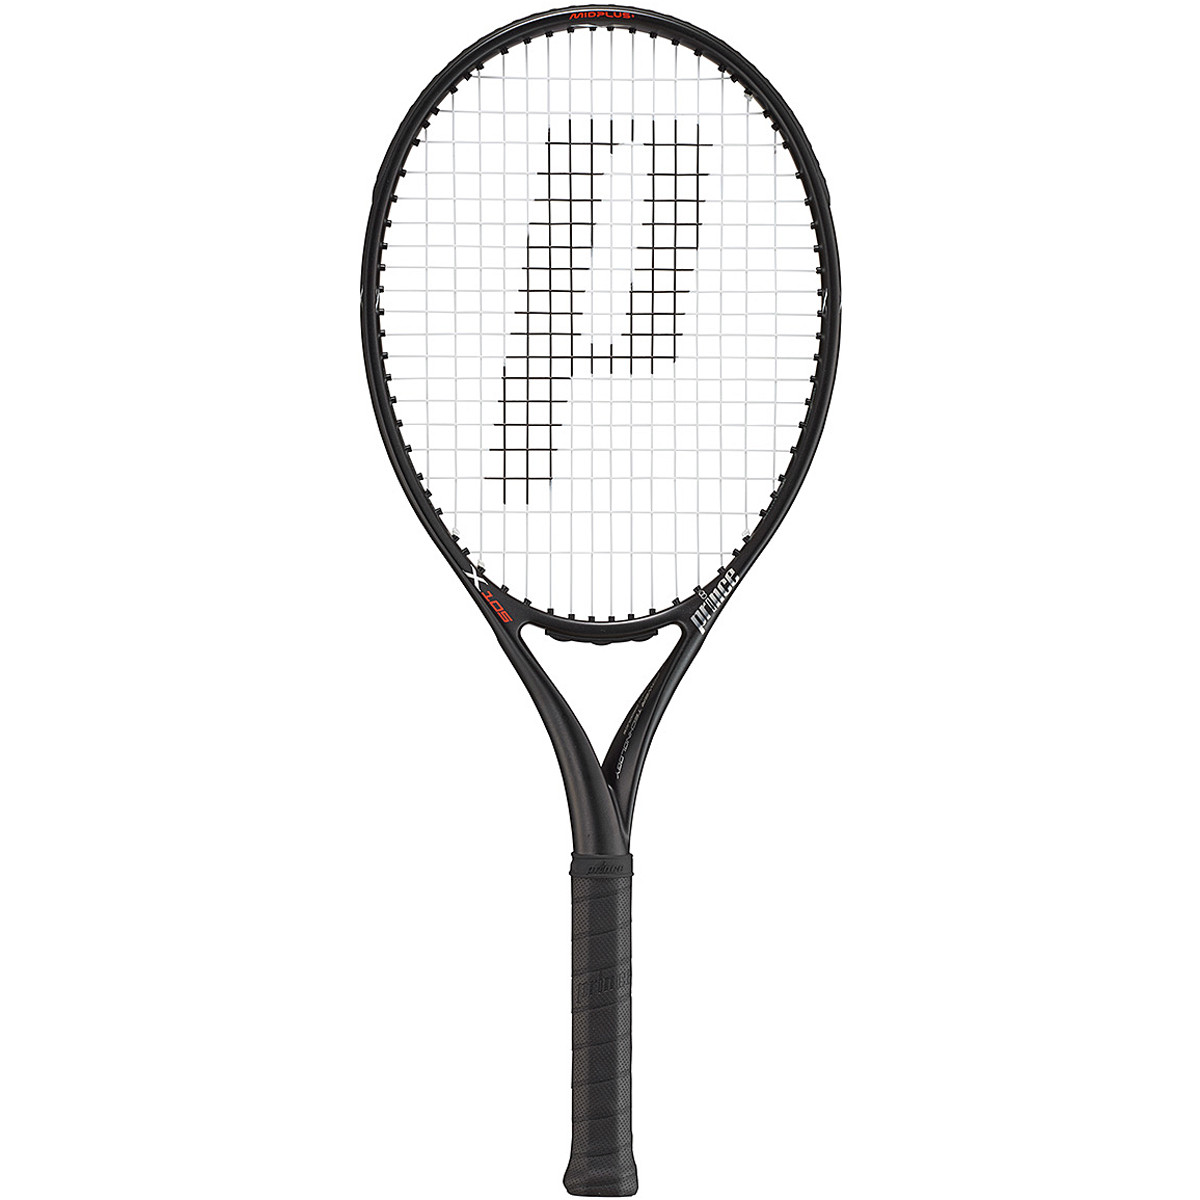 Raquette de tennis Twister junior 53,5 cm au meilleur prix